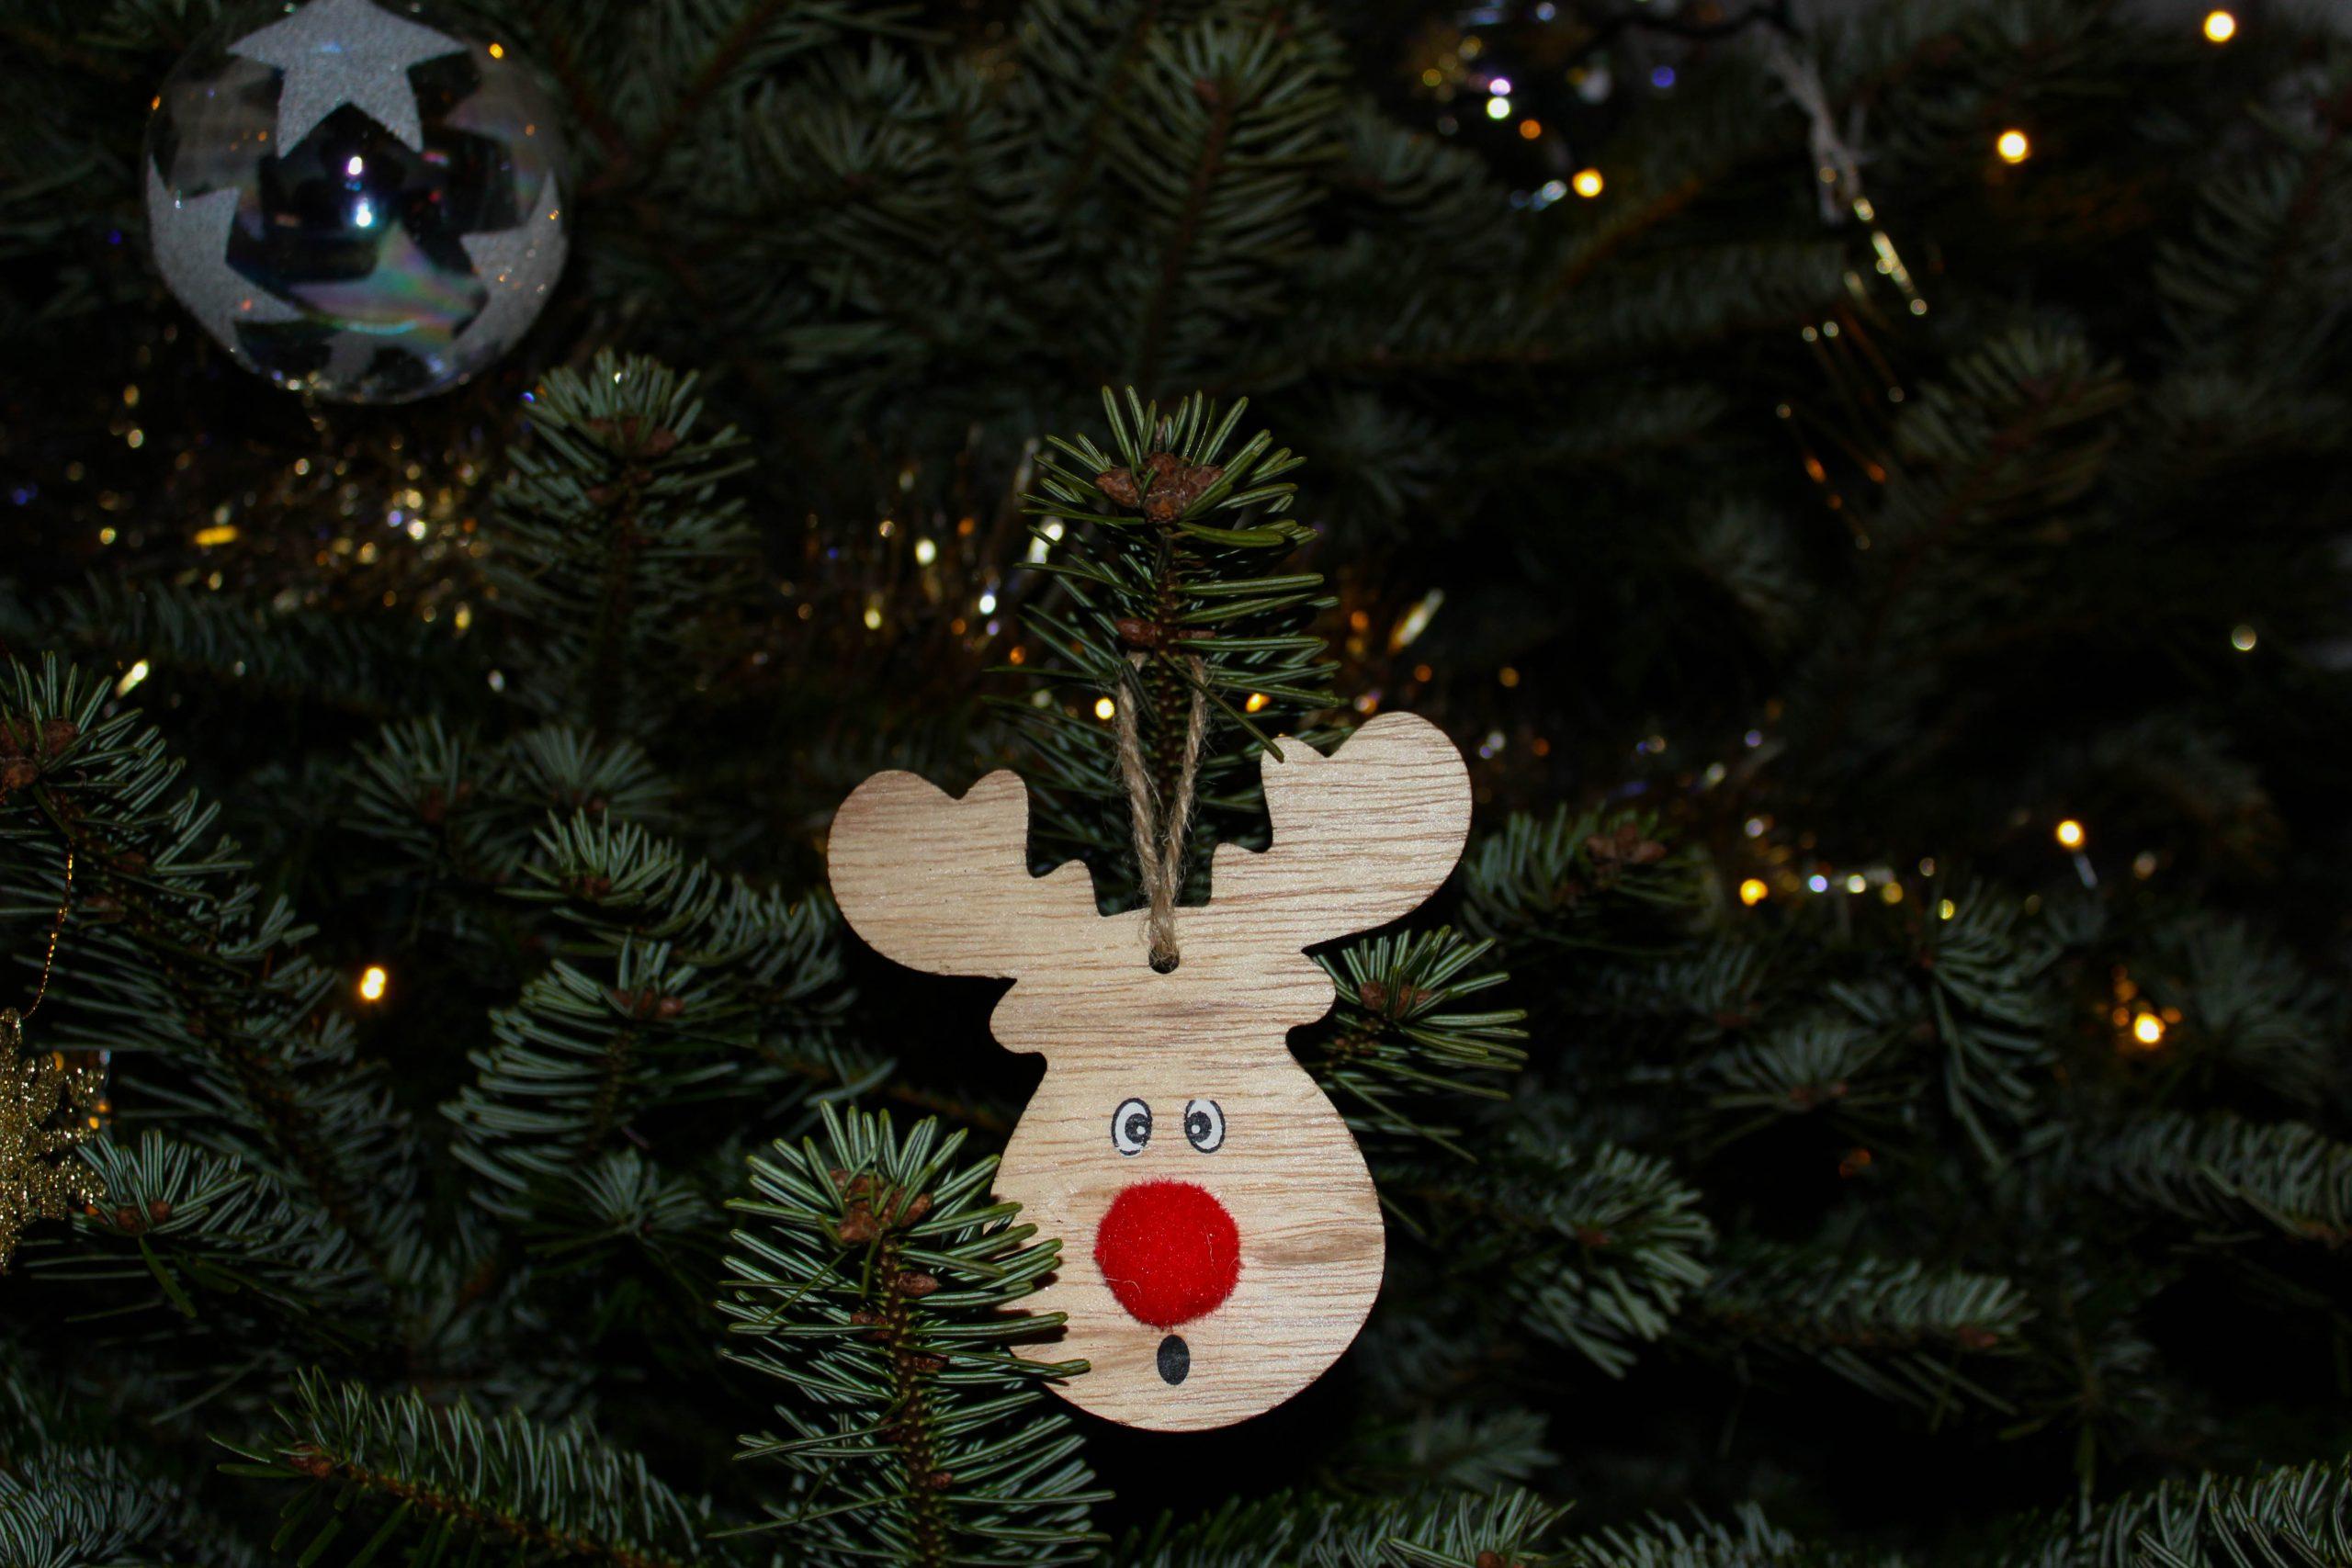 Homemade Reindeer Ornament on Tree